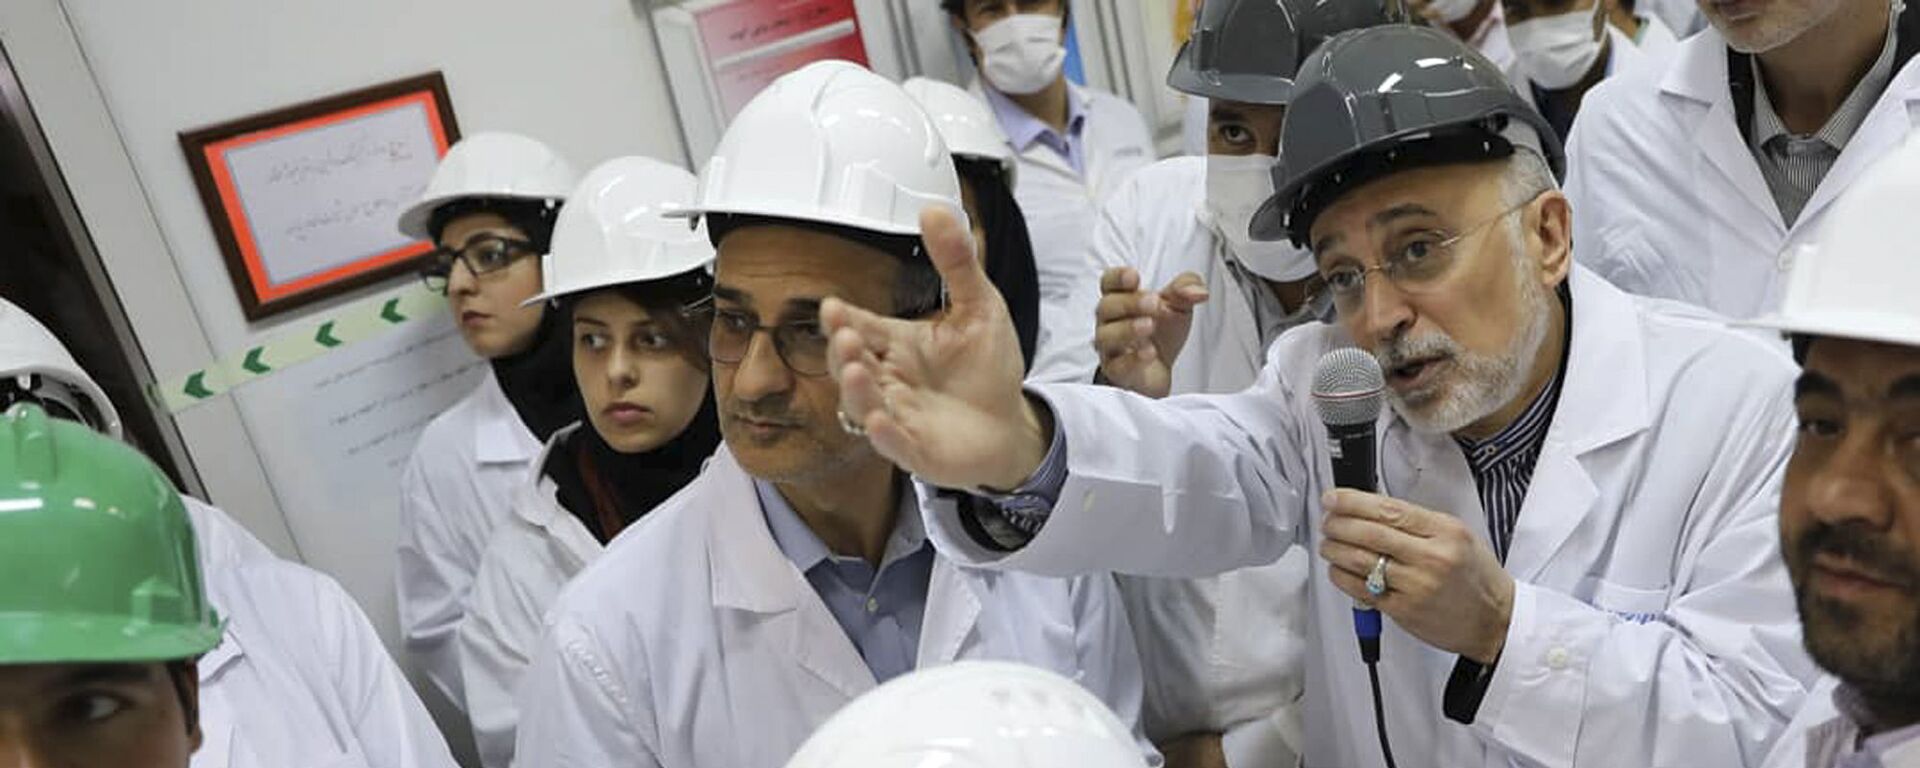 علي أكبر صالحي رئيس منظمة الطاقة النووية الإيرانية يتحدث مع وسائل الإعلام أثناء زيارته لمرفق تخصيب نطنز وسط إيران - سبوتنيك عربي, 1920, 28.09.2021